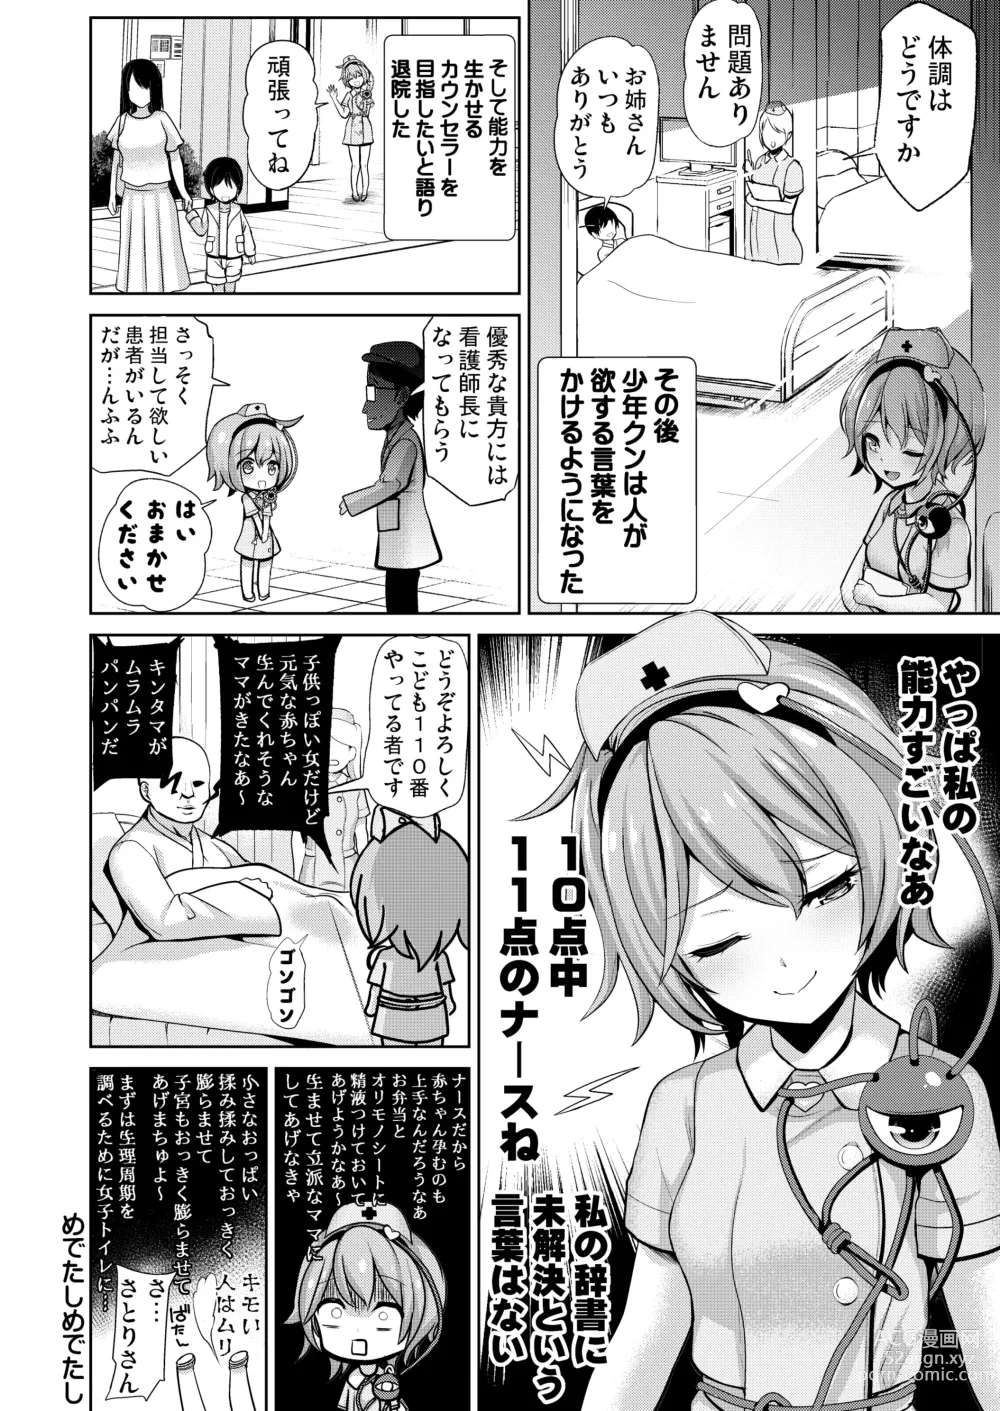 Page 13 of doujinshi Haitokukan Han Komeiji Nurse no Echi Echi Kango Nisshi